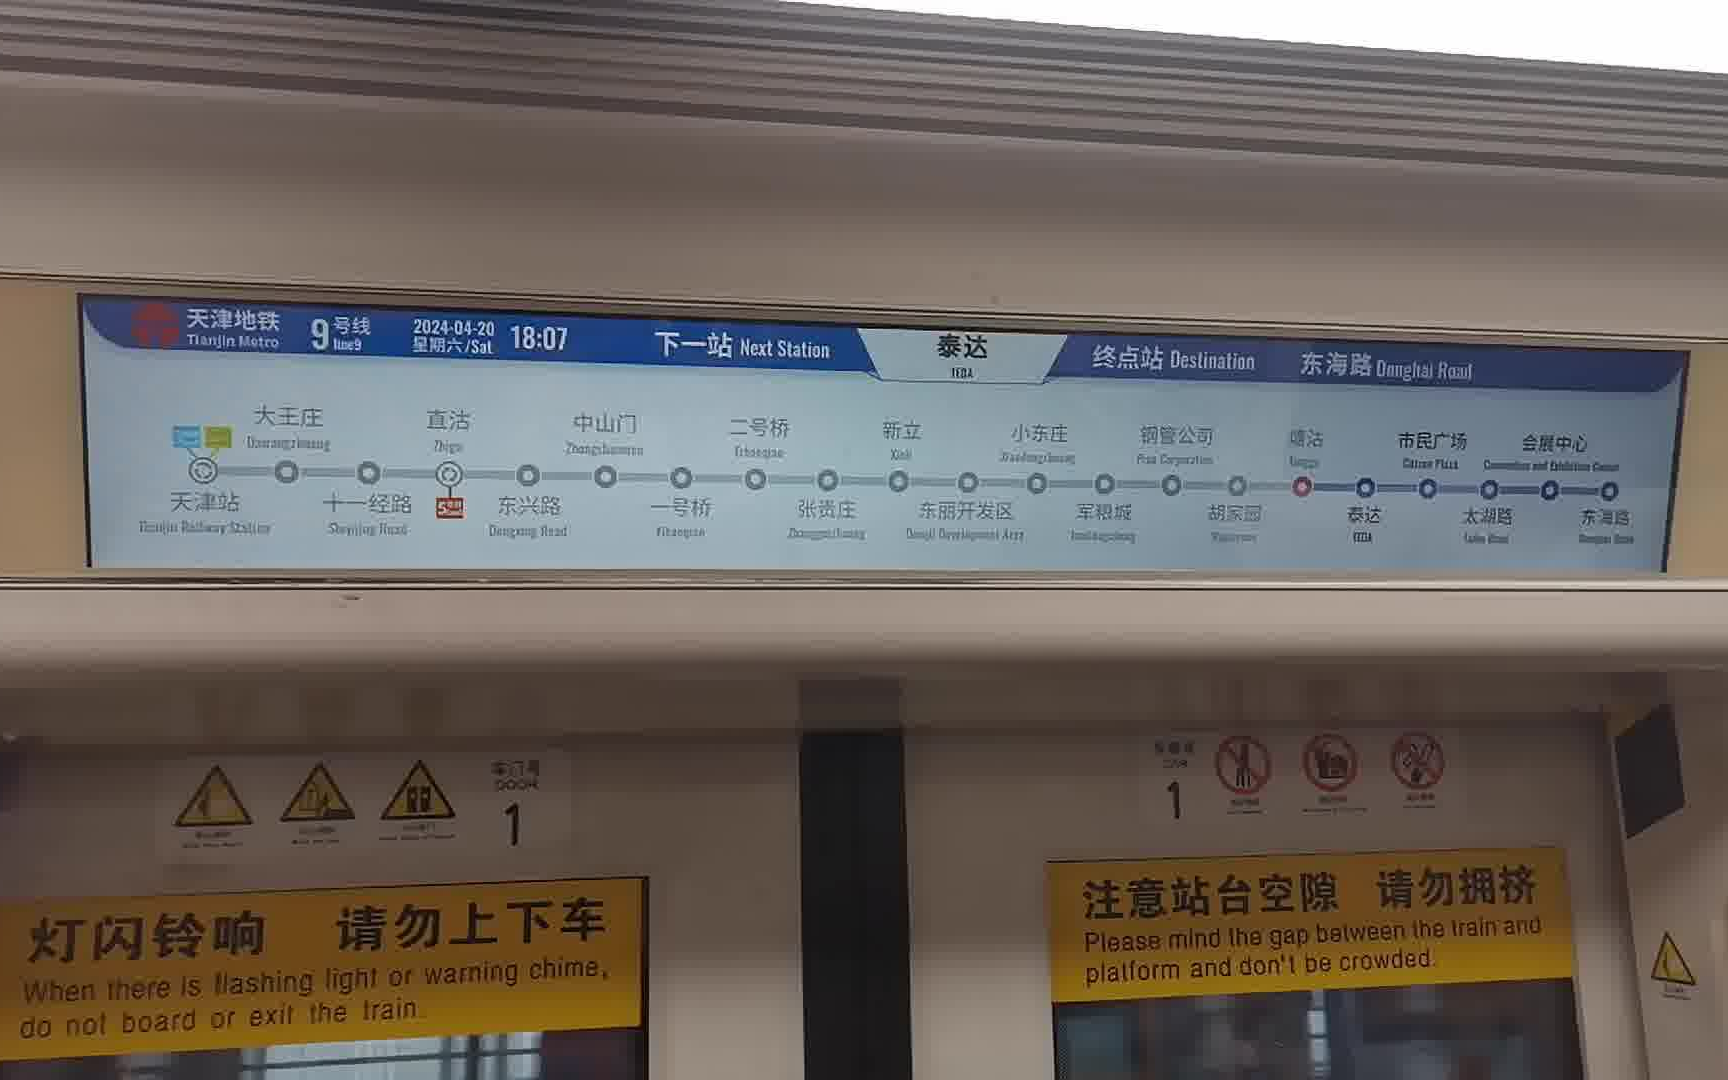 【抢救性拍摄】津滨轻轨9号线车厢为时不长、剩余机会不多的英文站名电显